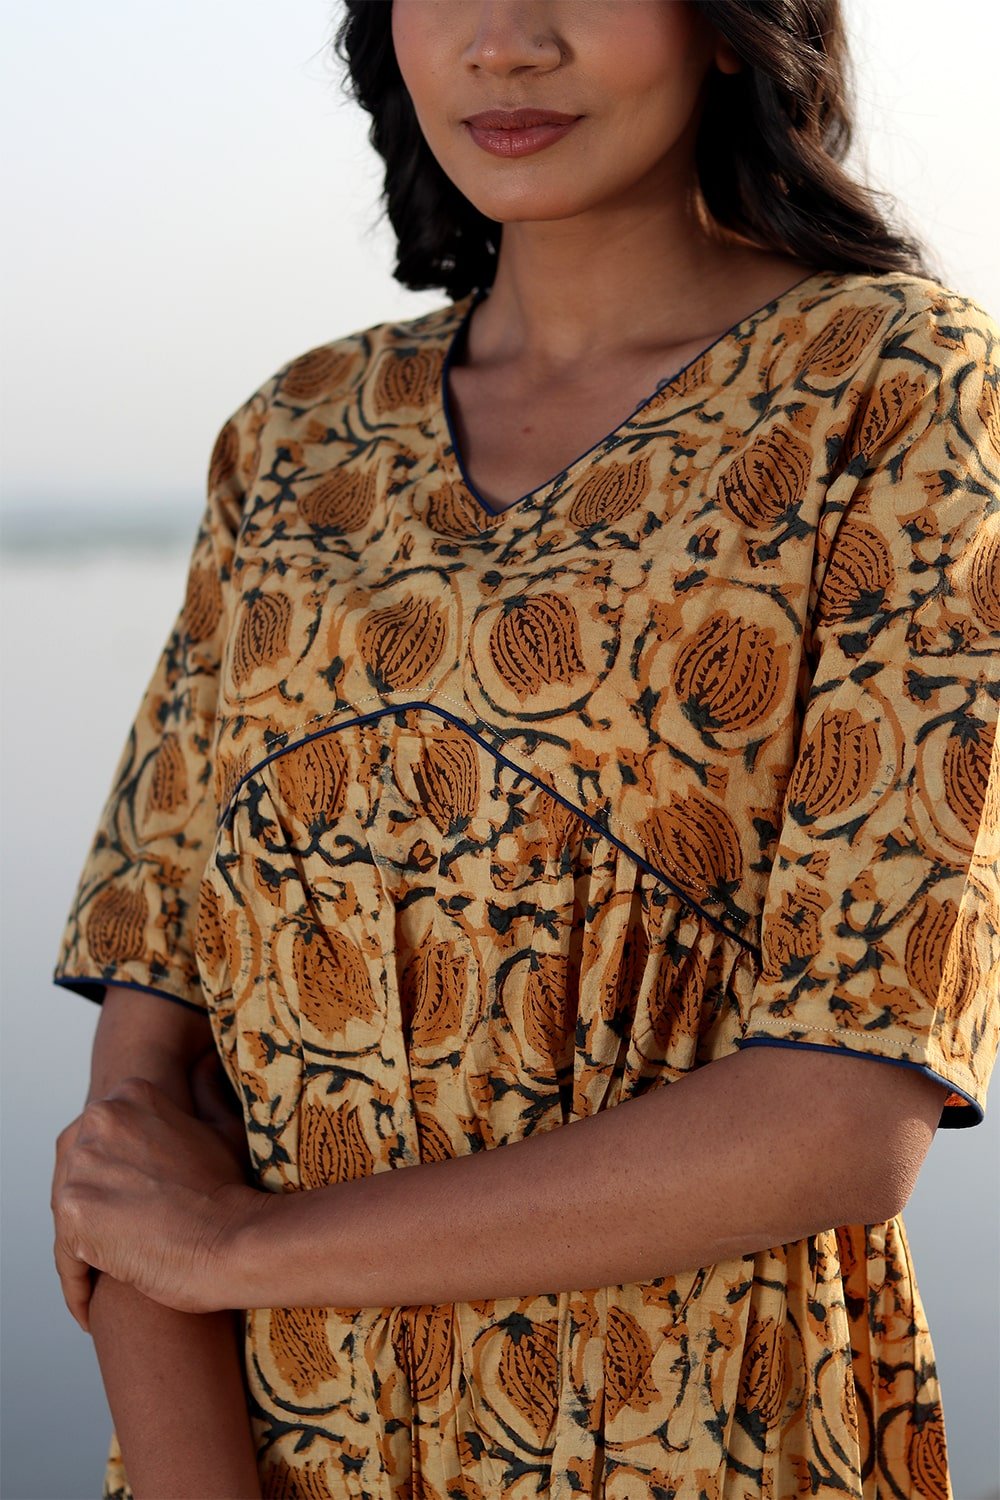 SootiSyahi 'Natural Bliss' Block Printed Cotton Dress - SootiSyahi